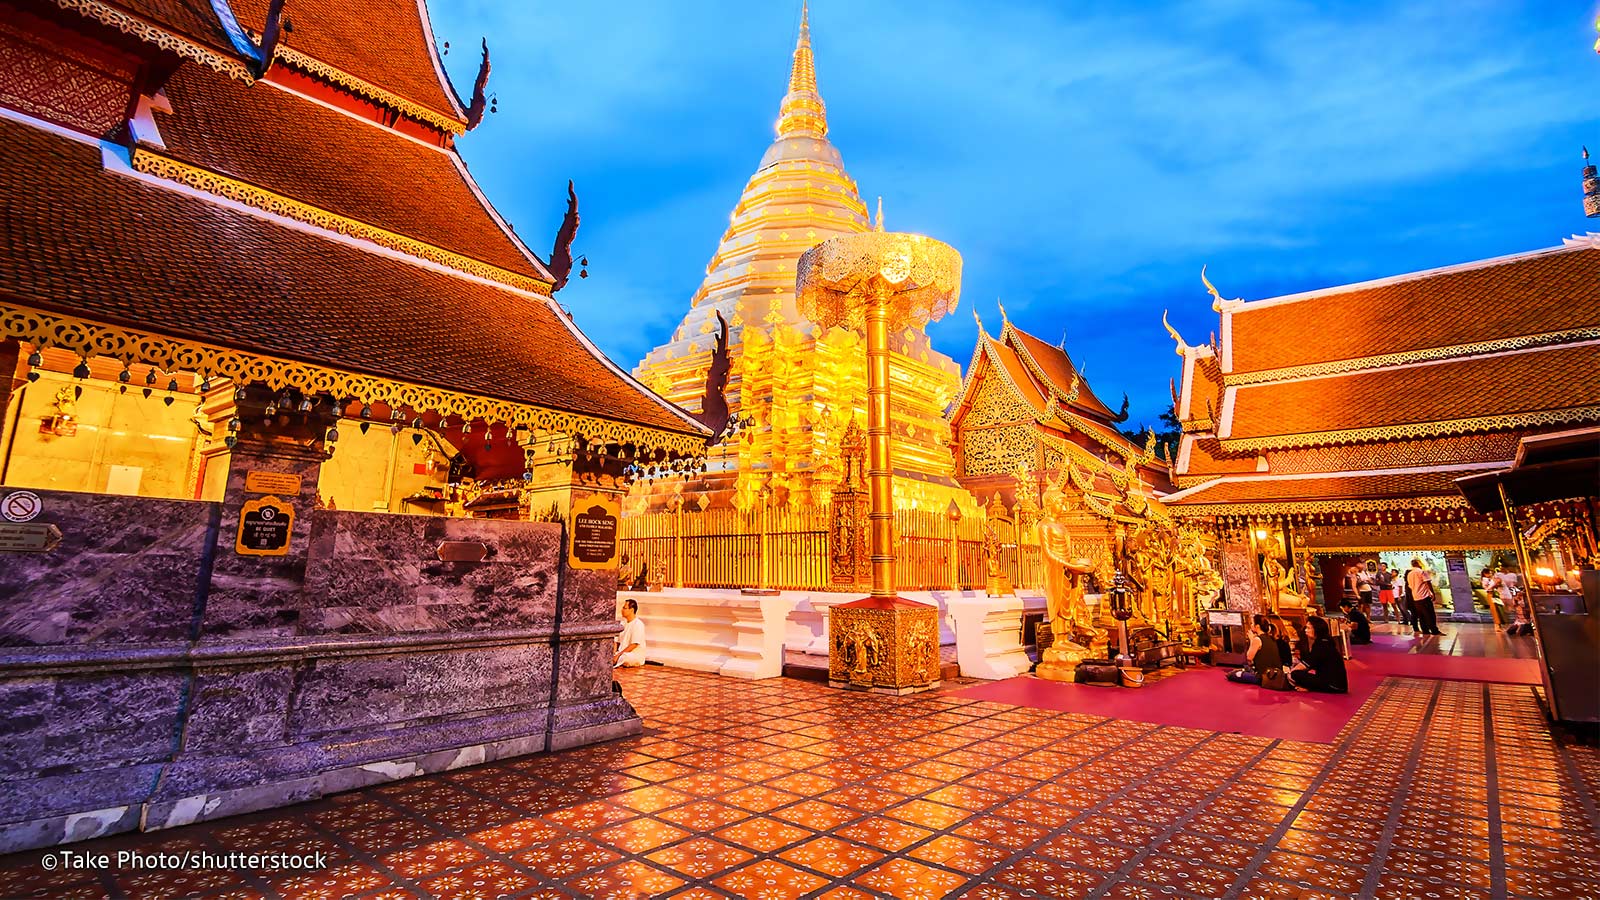 Chuyển phát nhanh quốc tế từ Việt Nam đi Chiang Mai, Thái Lan